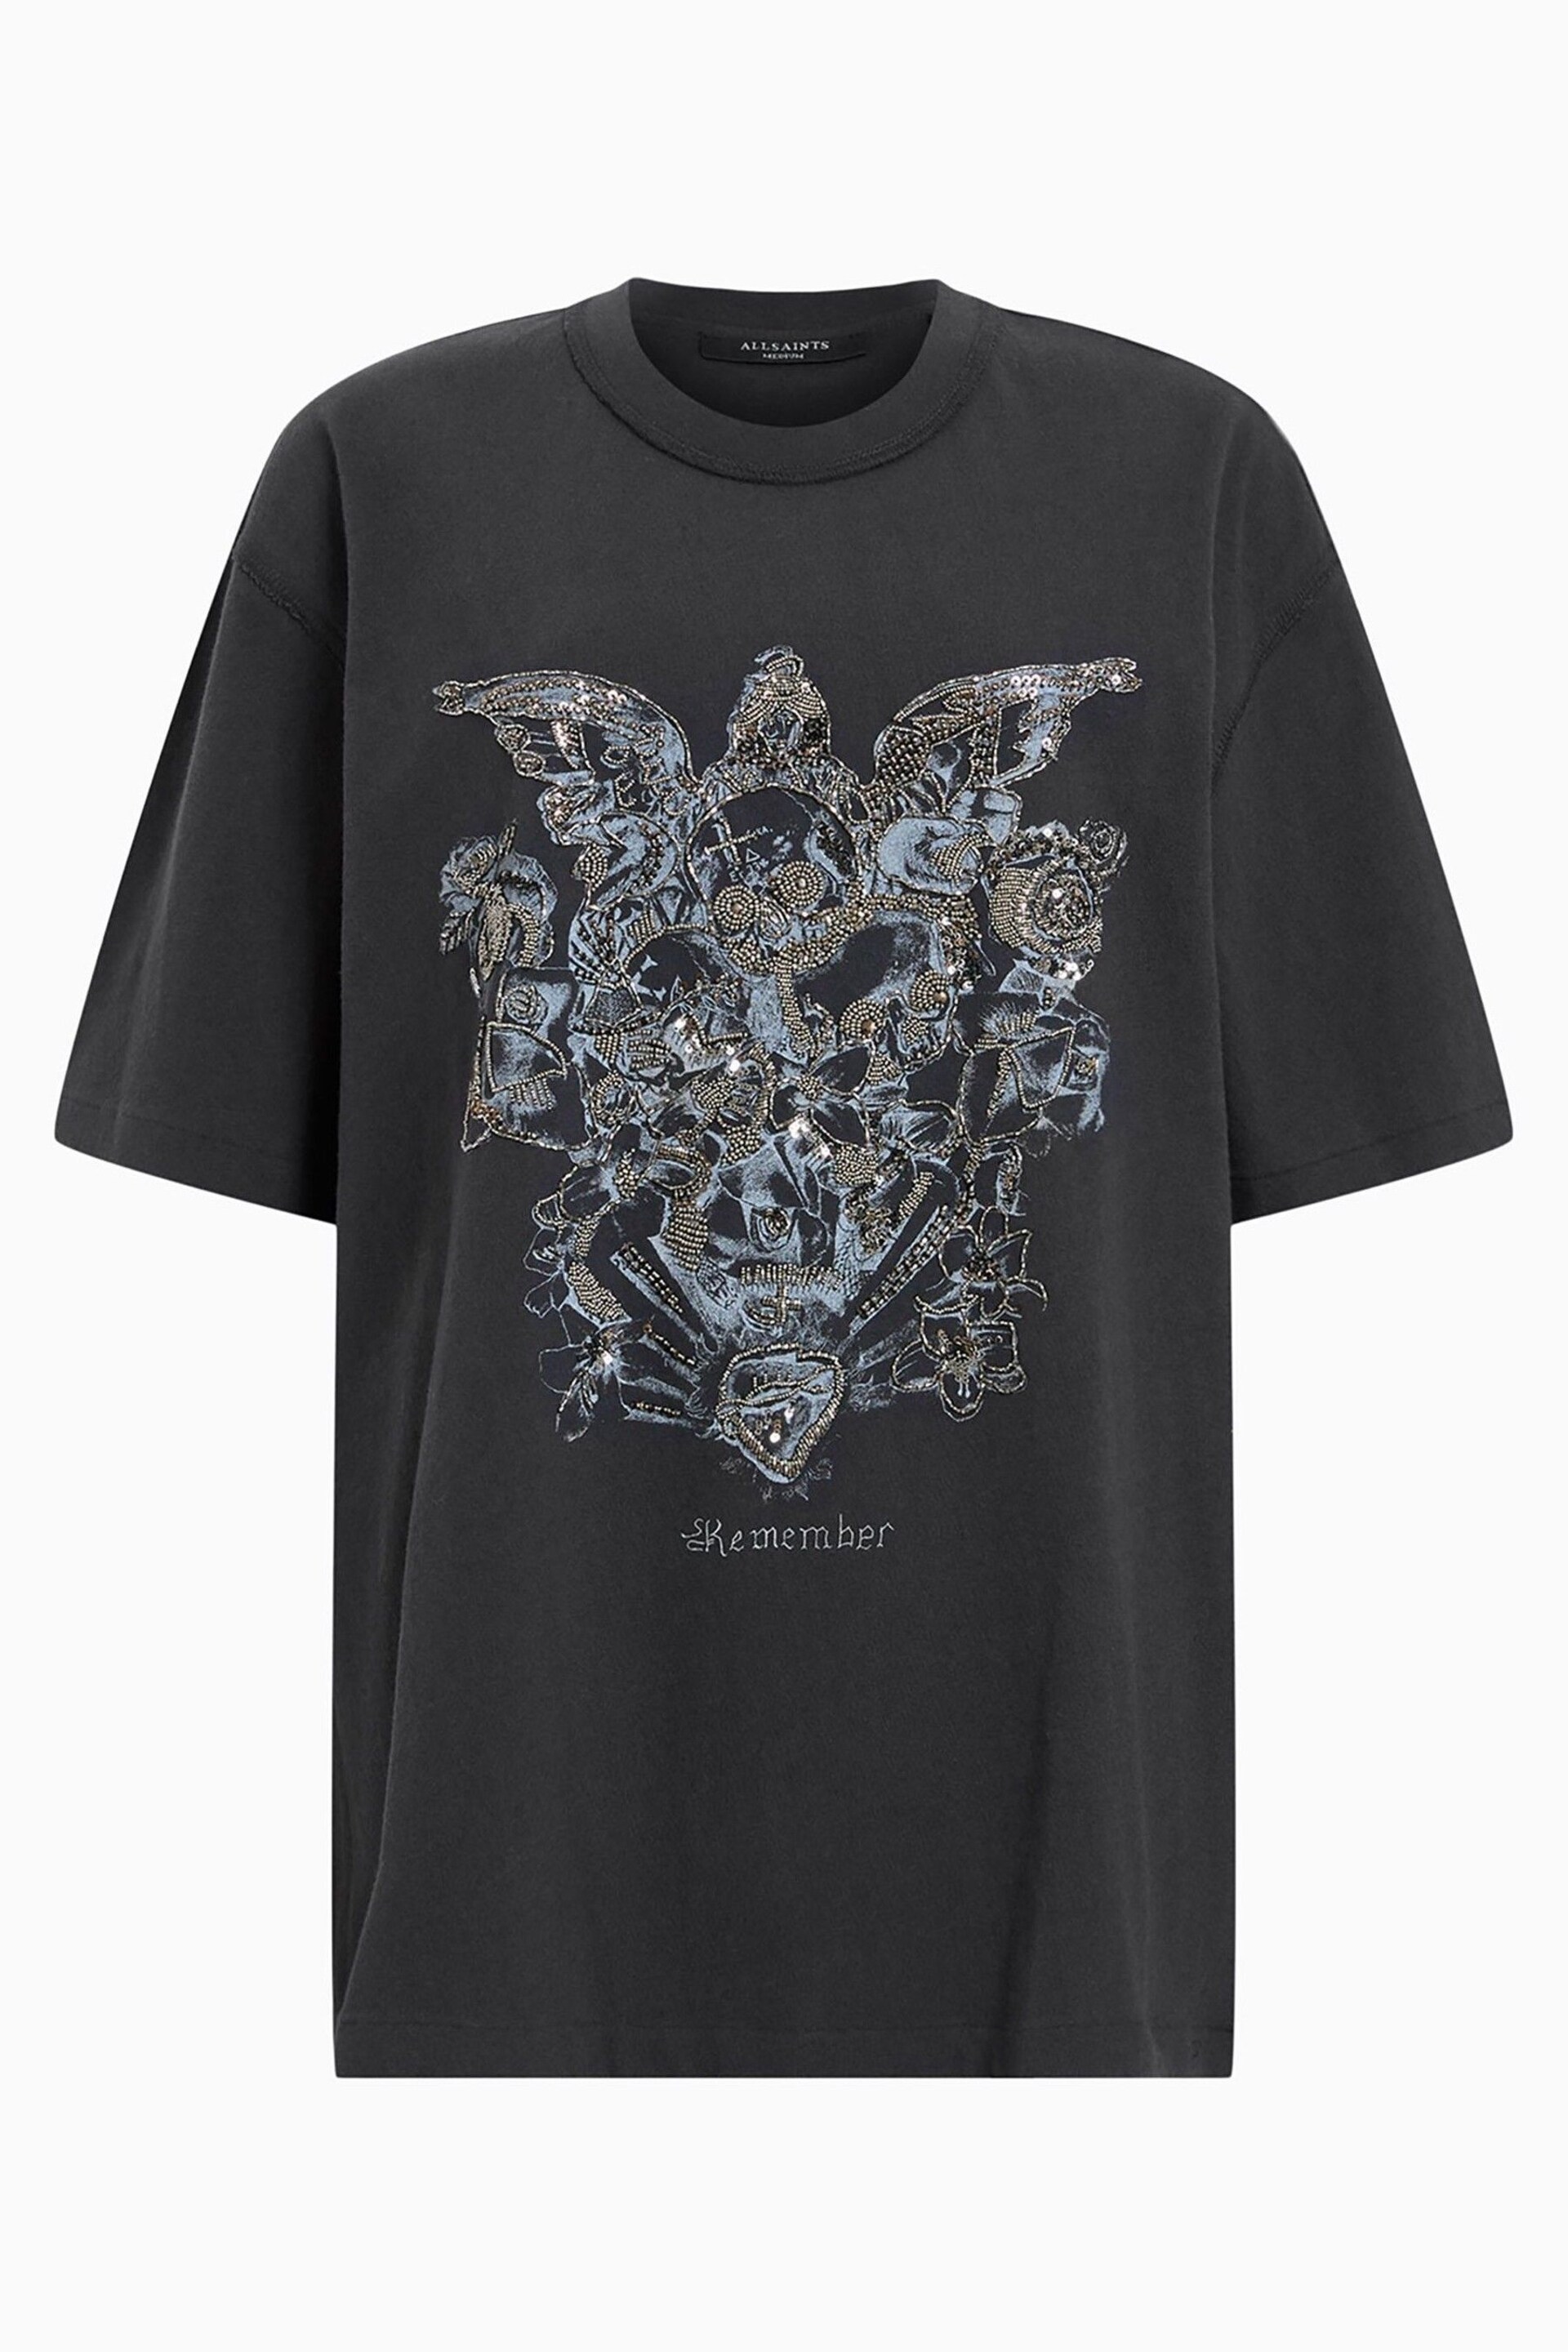 AllSaints Black Covenant Embellished Crew T-Shirt - Image 8 of 8